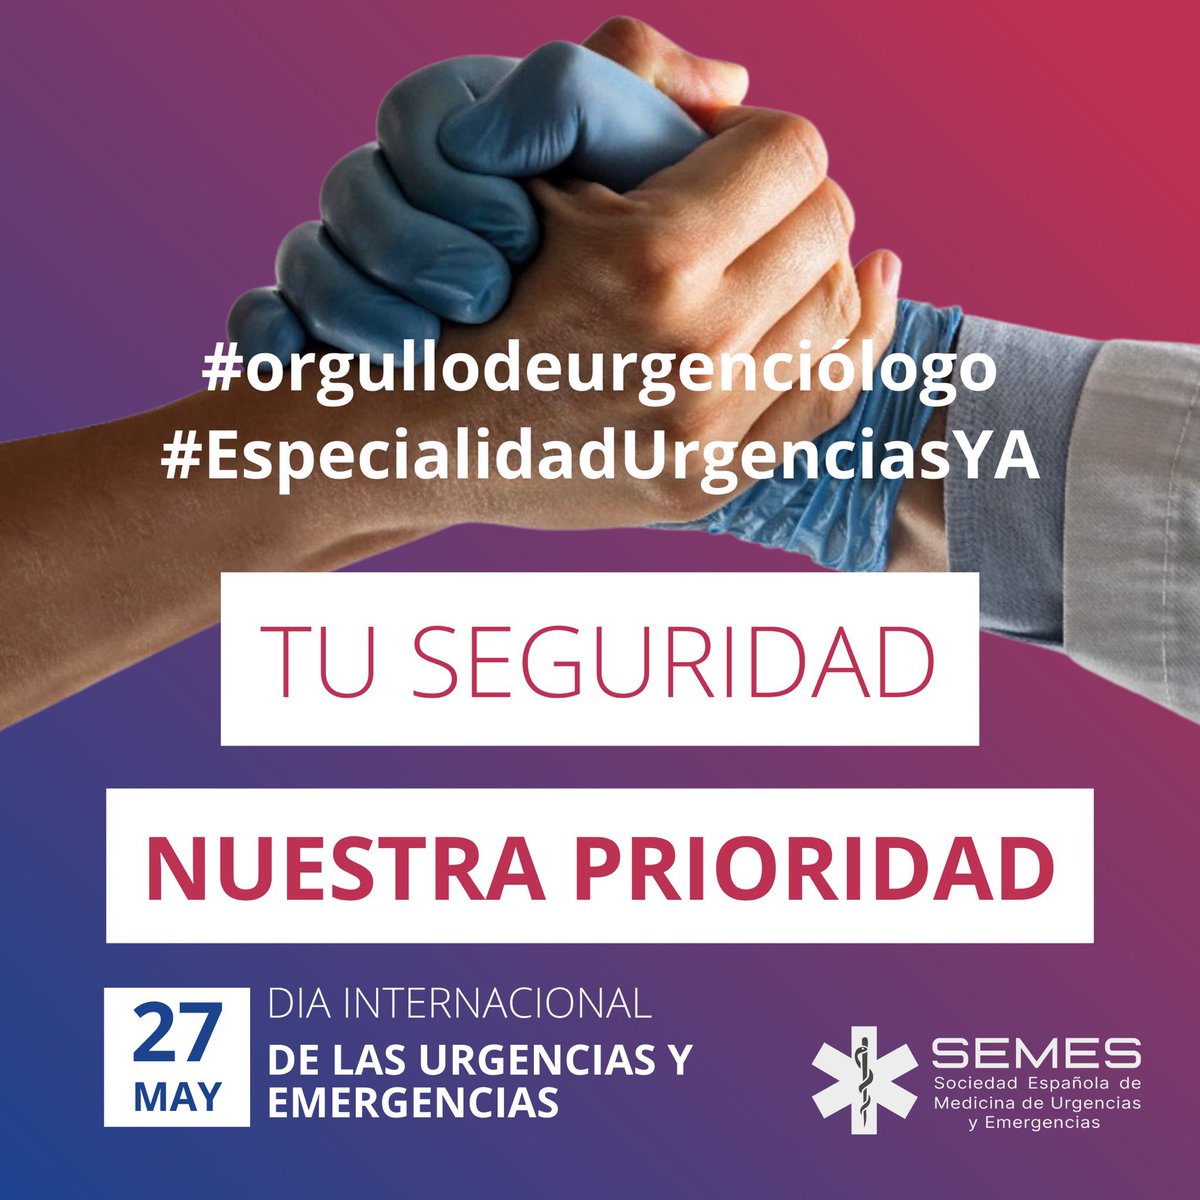 #EspecialidadUrgenciasYA 
#orgullodeurgenciologo 

¡Feliz día! Y gracias por estar ahí 24.7.365